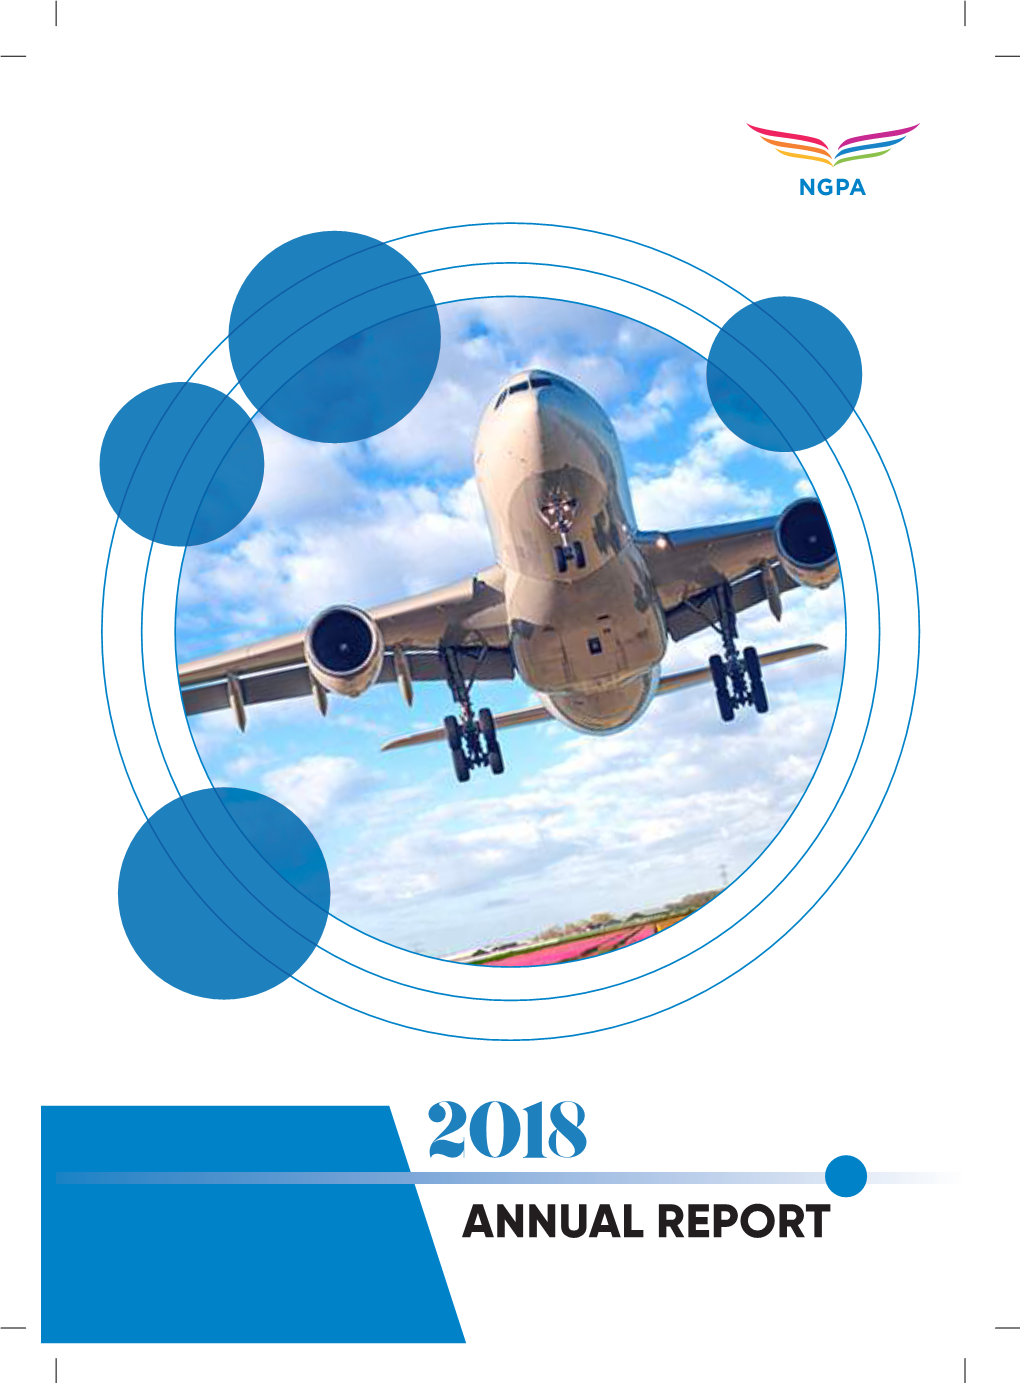 NGPA Annual Report